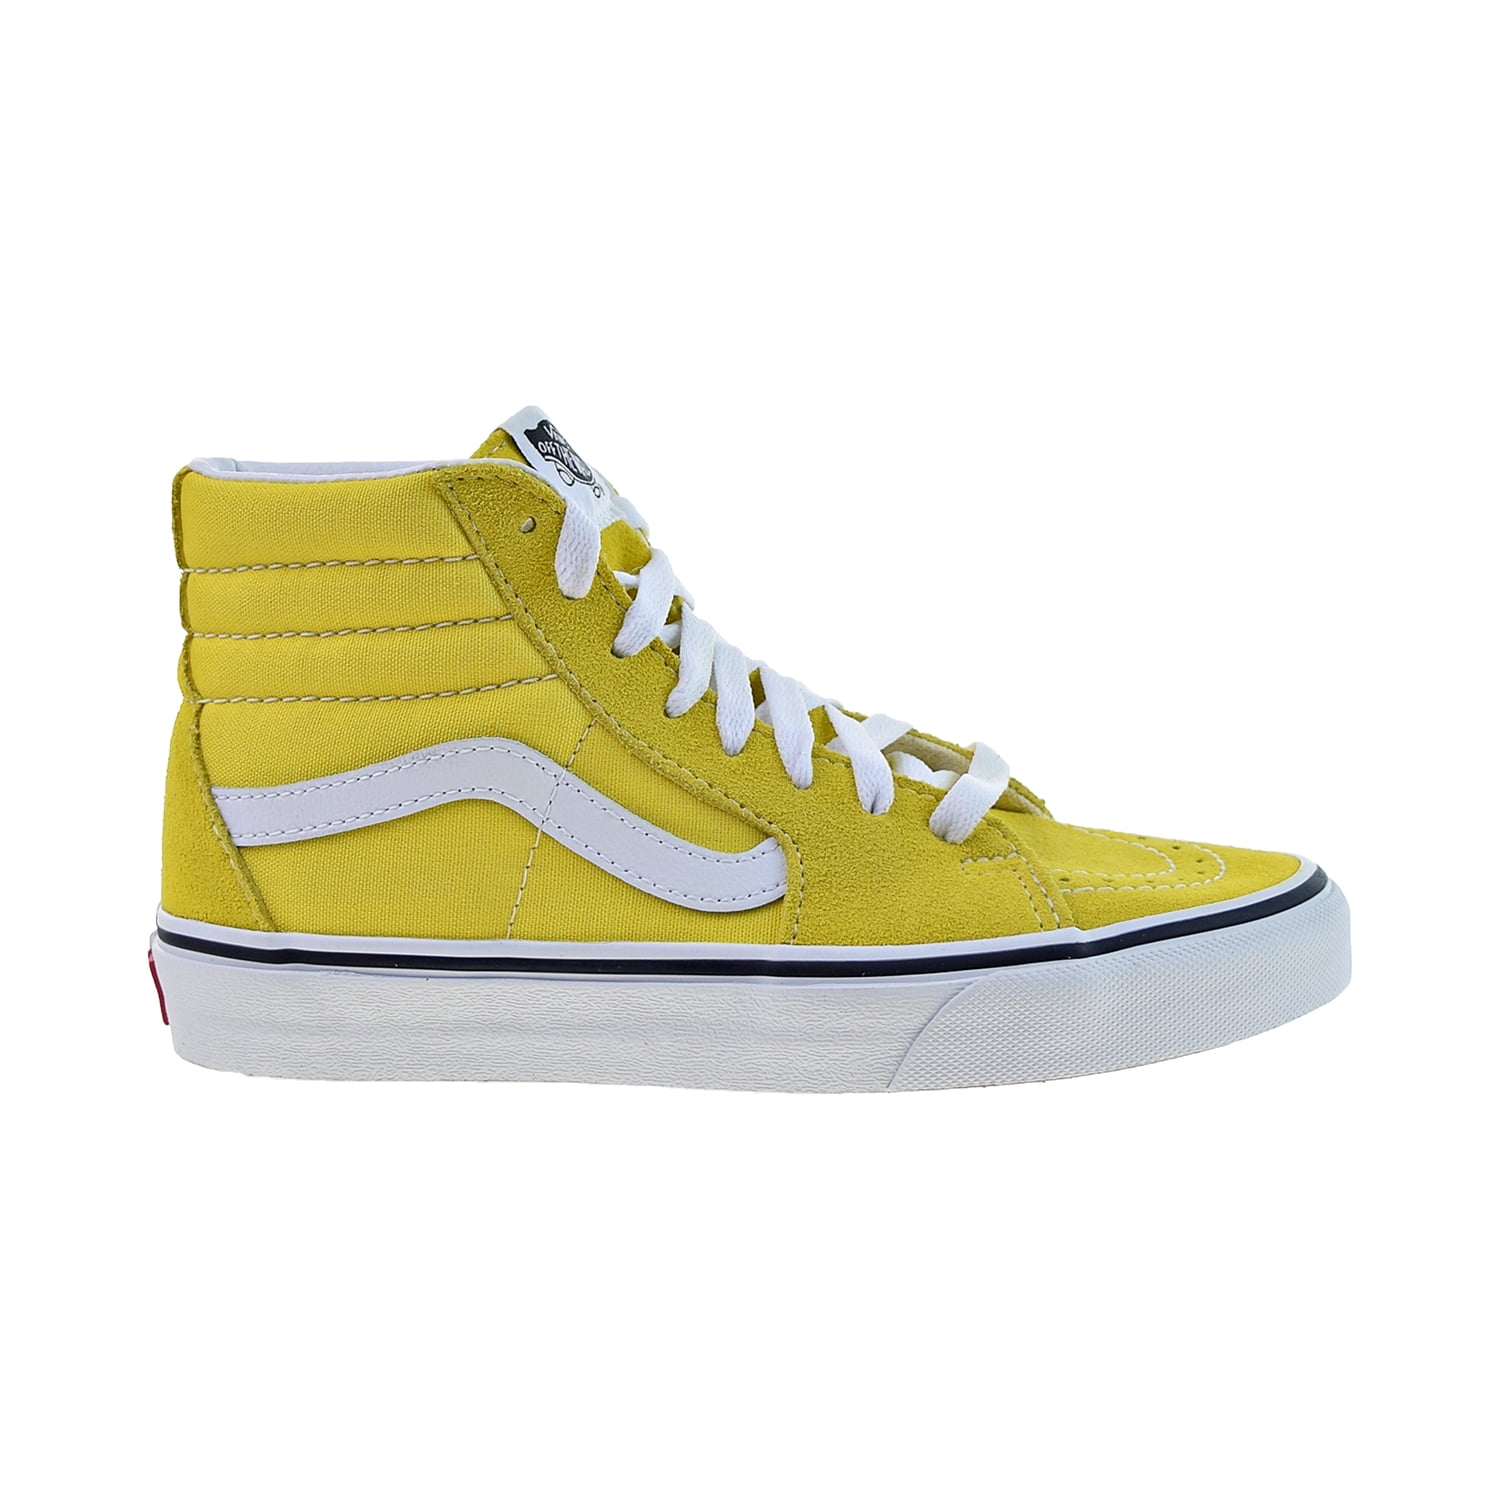 Matematisk Dusør frivillig Vans Sk8-Hi Skateboarding Men's Shoes Vibrant Yellow-True White  vn0a4bv6-fsx - Walmart.com